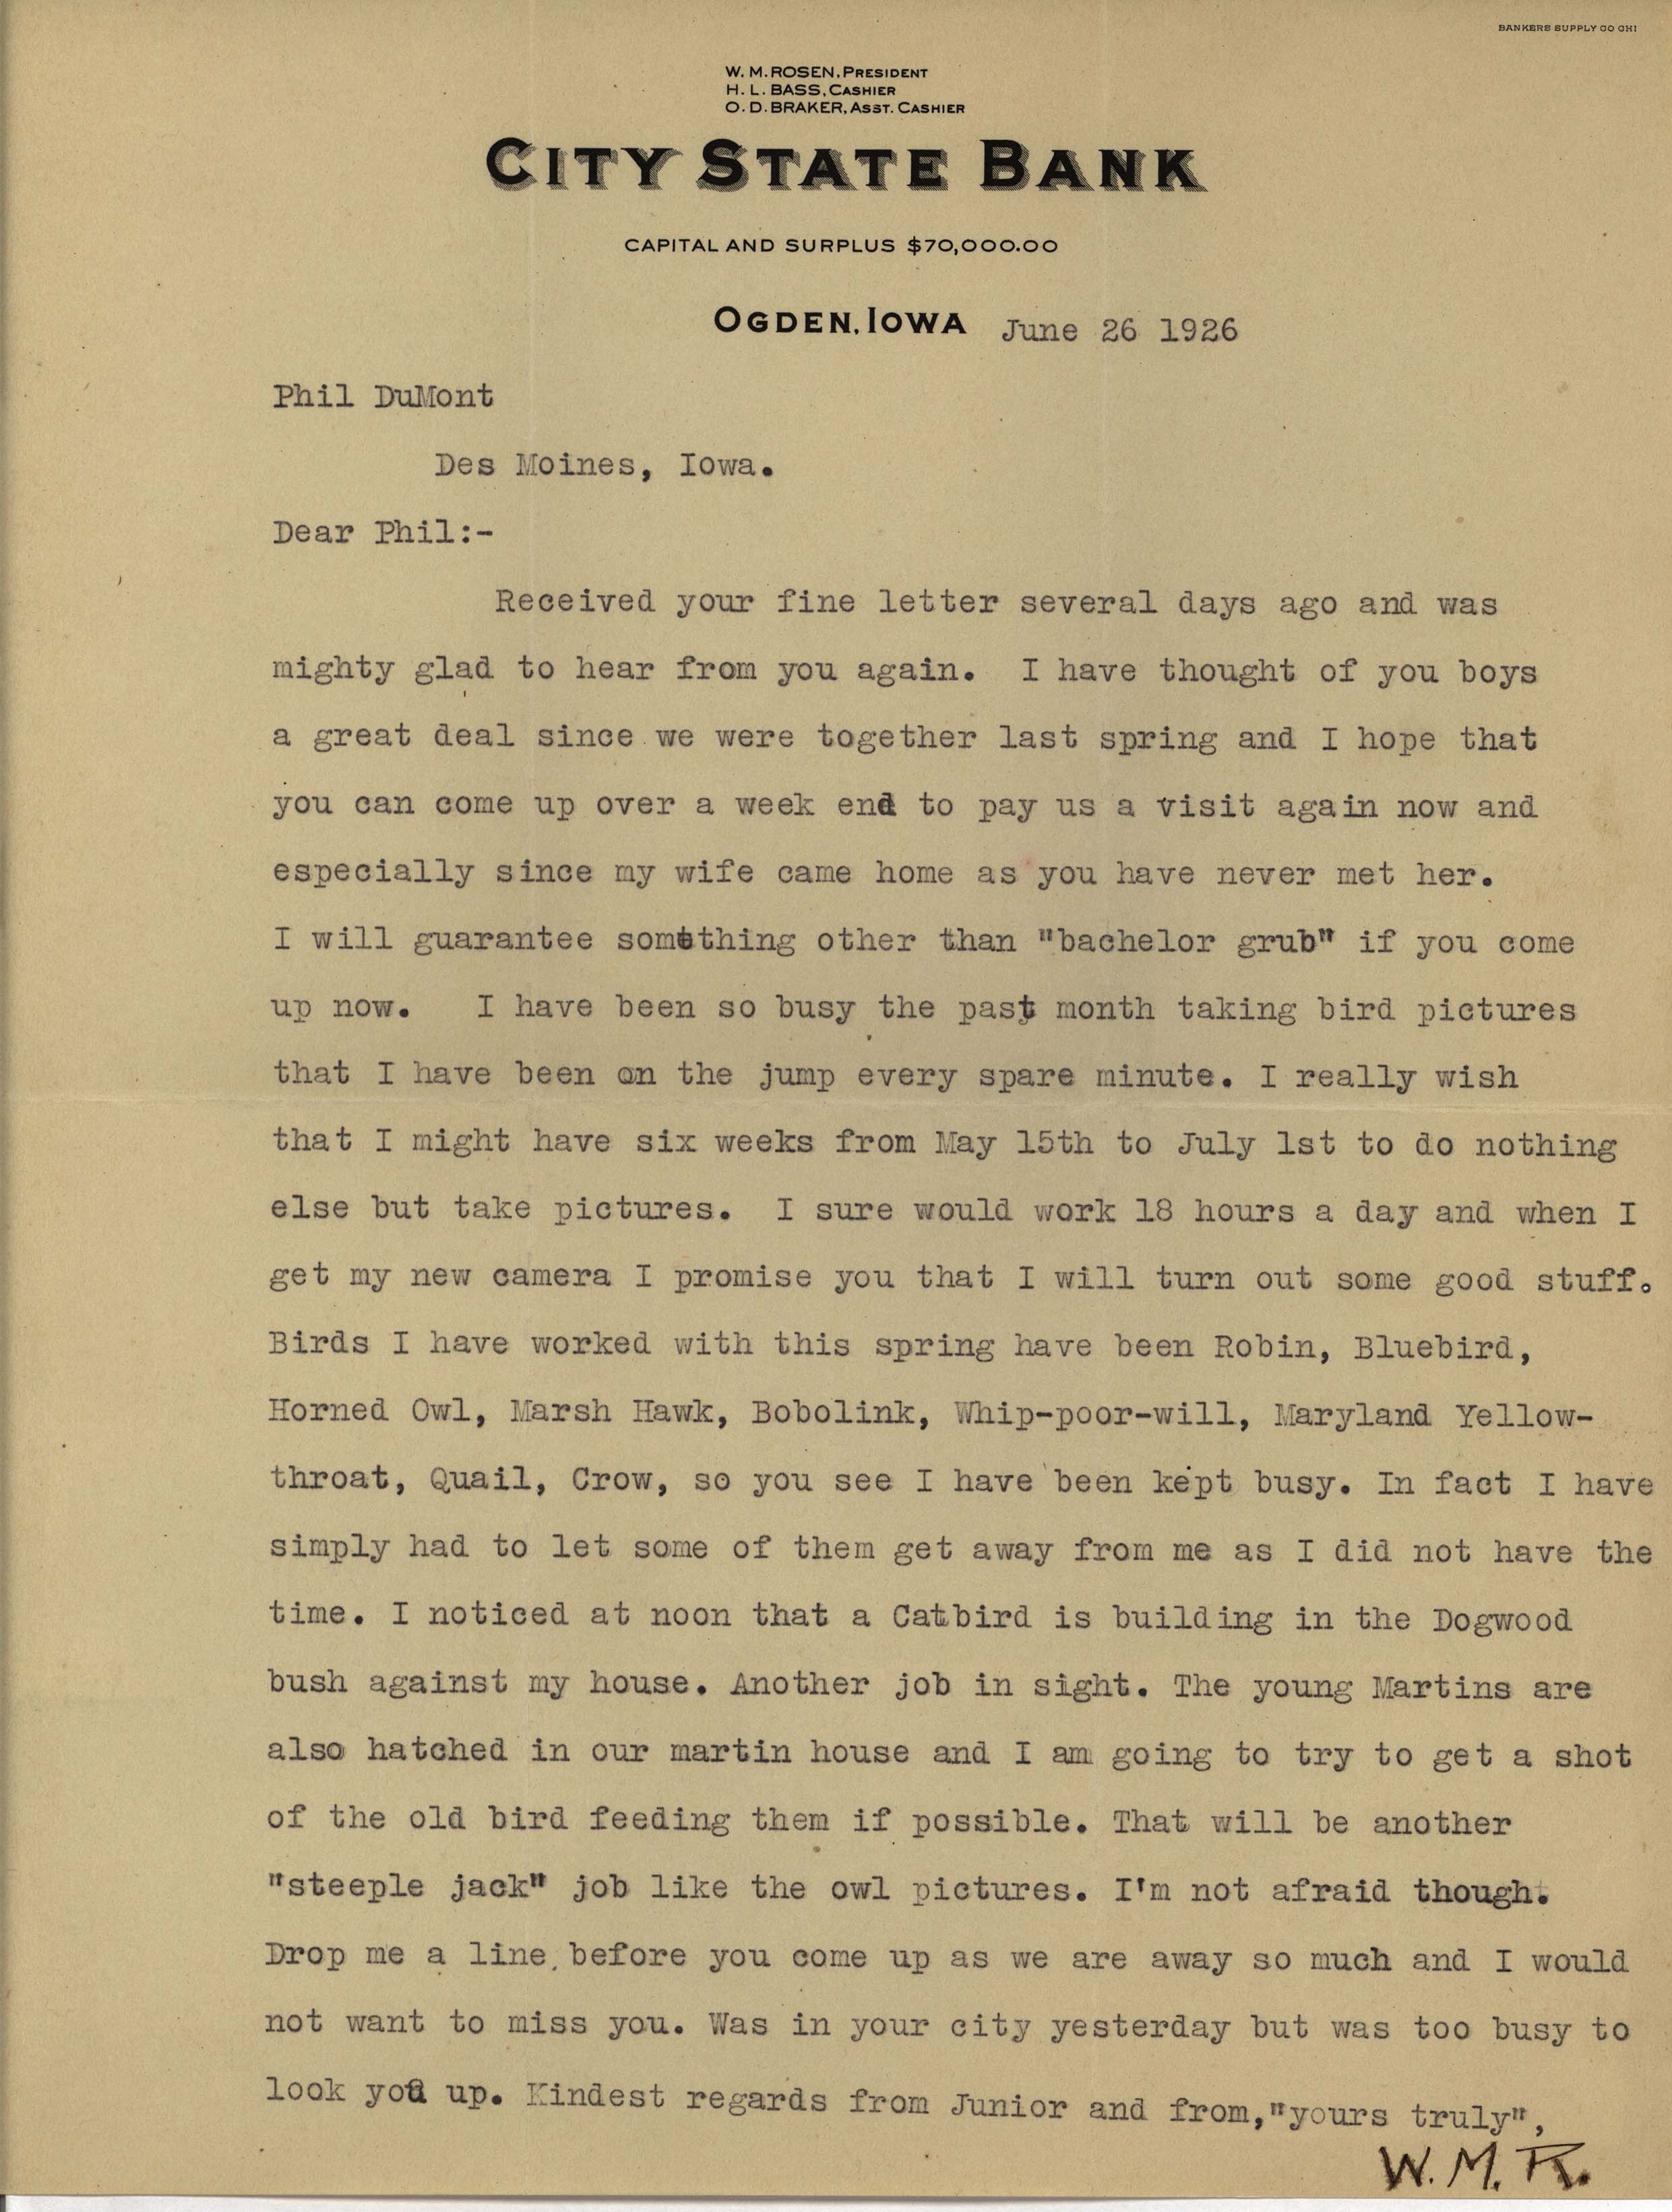 Walter Rosene letter to Philip DuMont regarding bird photography, June 26, 1926